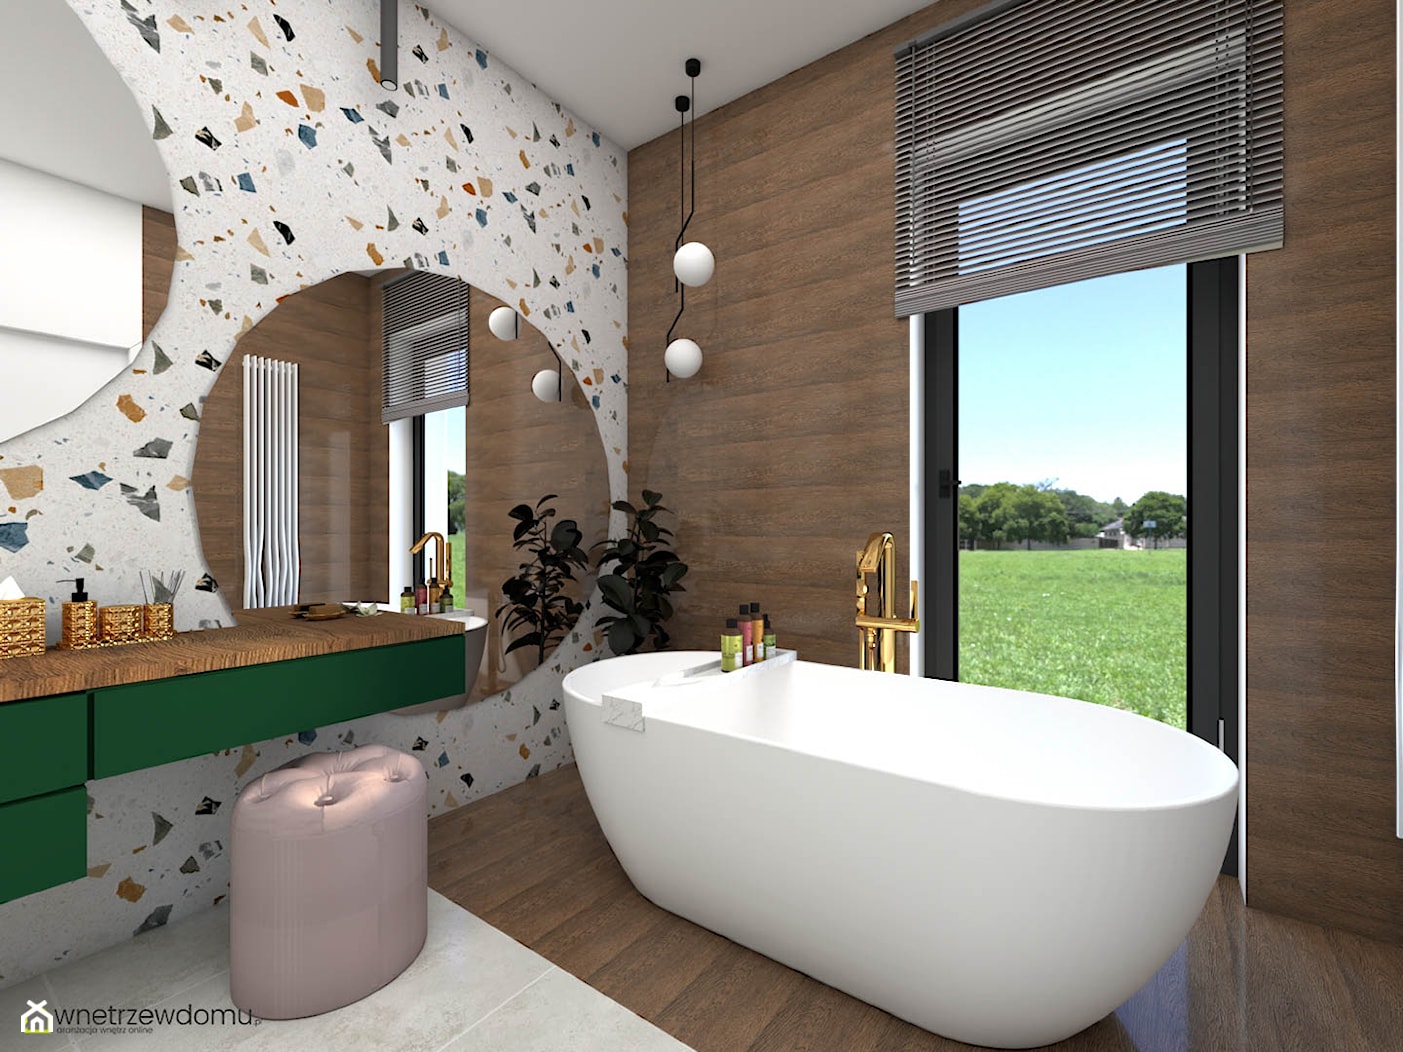 Jasna łazienka z kolorowymi płytkami lastrico - zdjęcie od wnetrzewdomu - Homebook